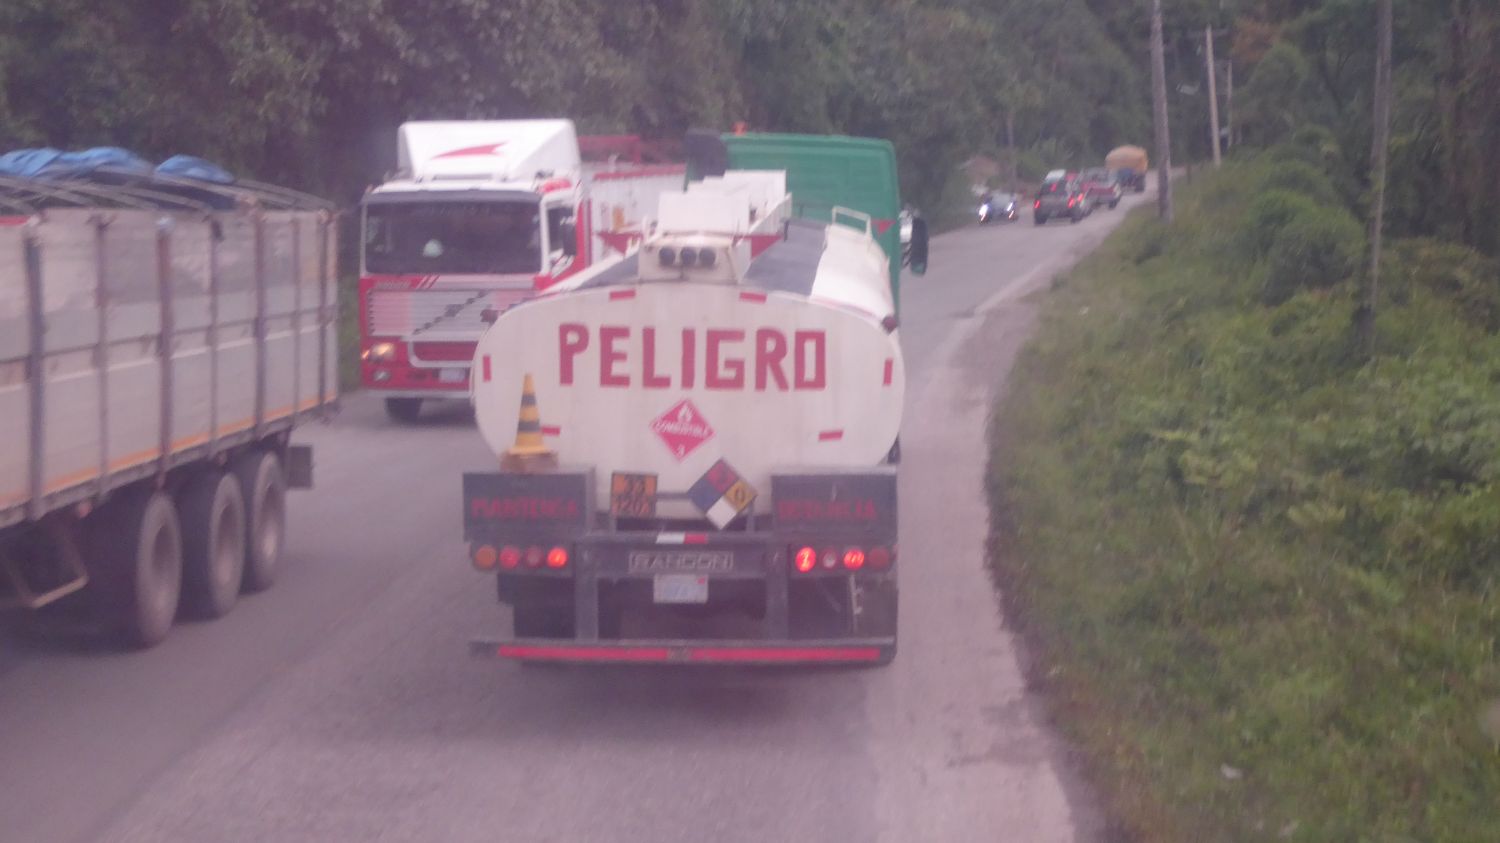 Peligro - Danger